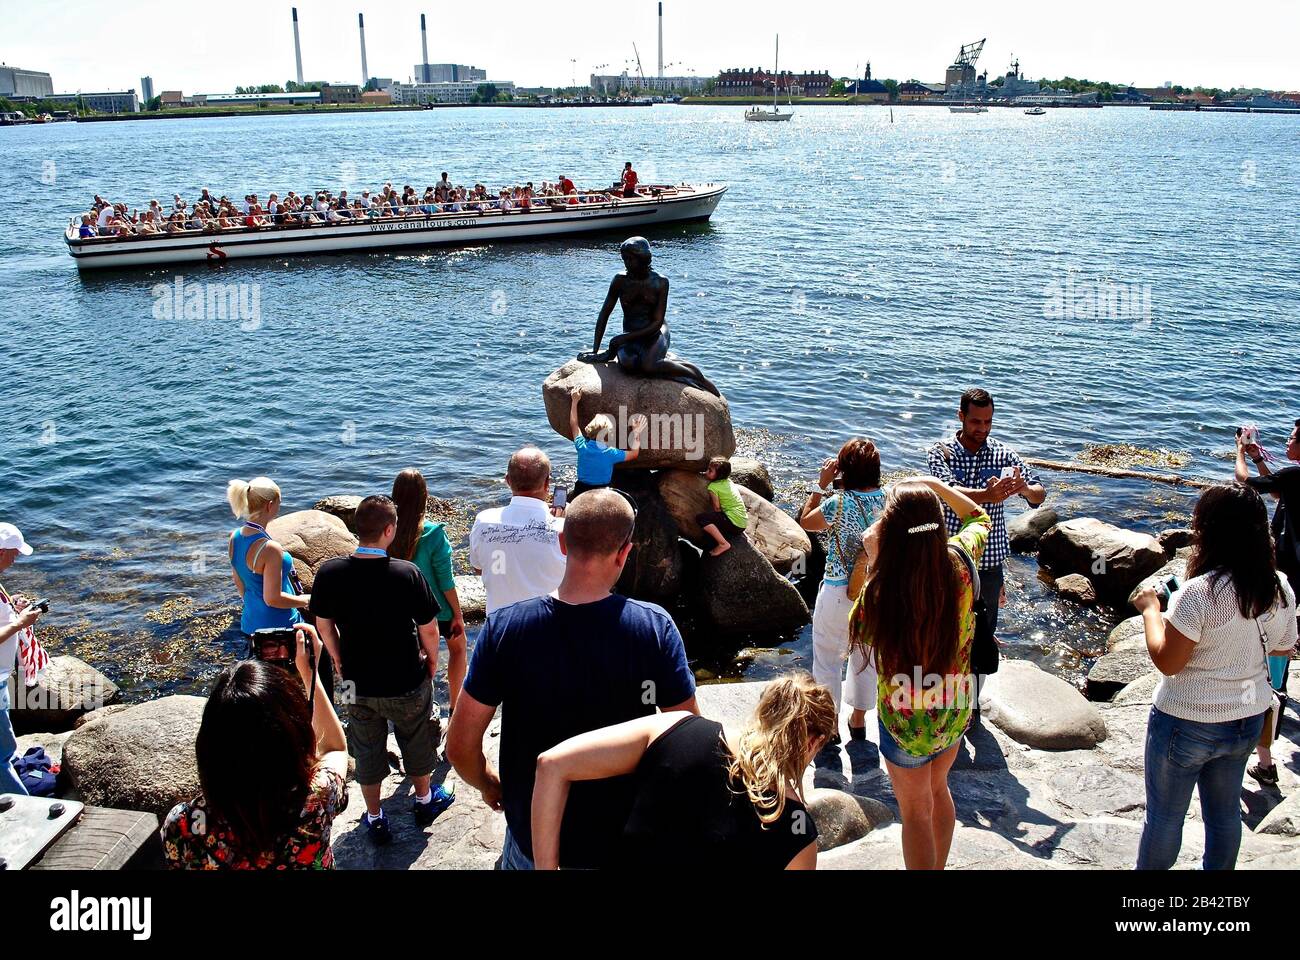 La Petite Sirène (Den Lille Havfrue) à Copenhague, Danemark attire une foule de touristes. Statue la plus photographiée. Artiste: Edvard Eriksen Banque D'Images